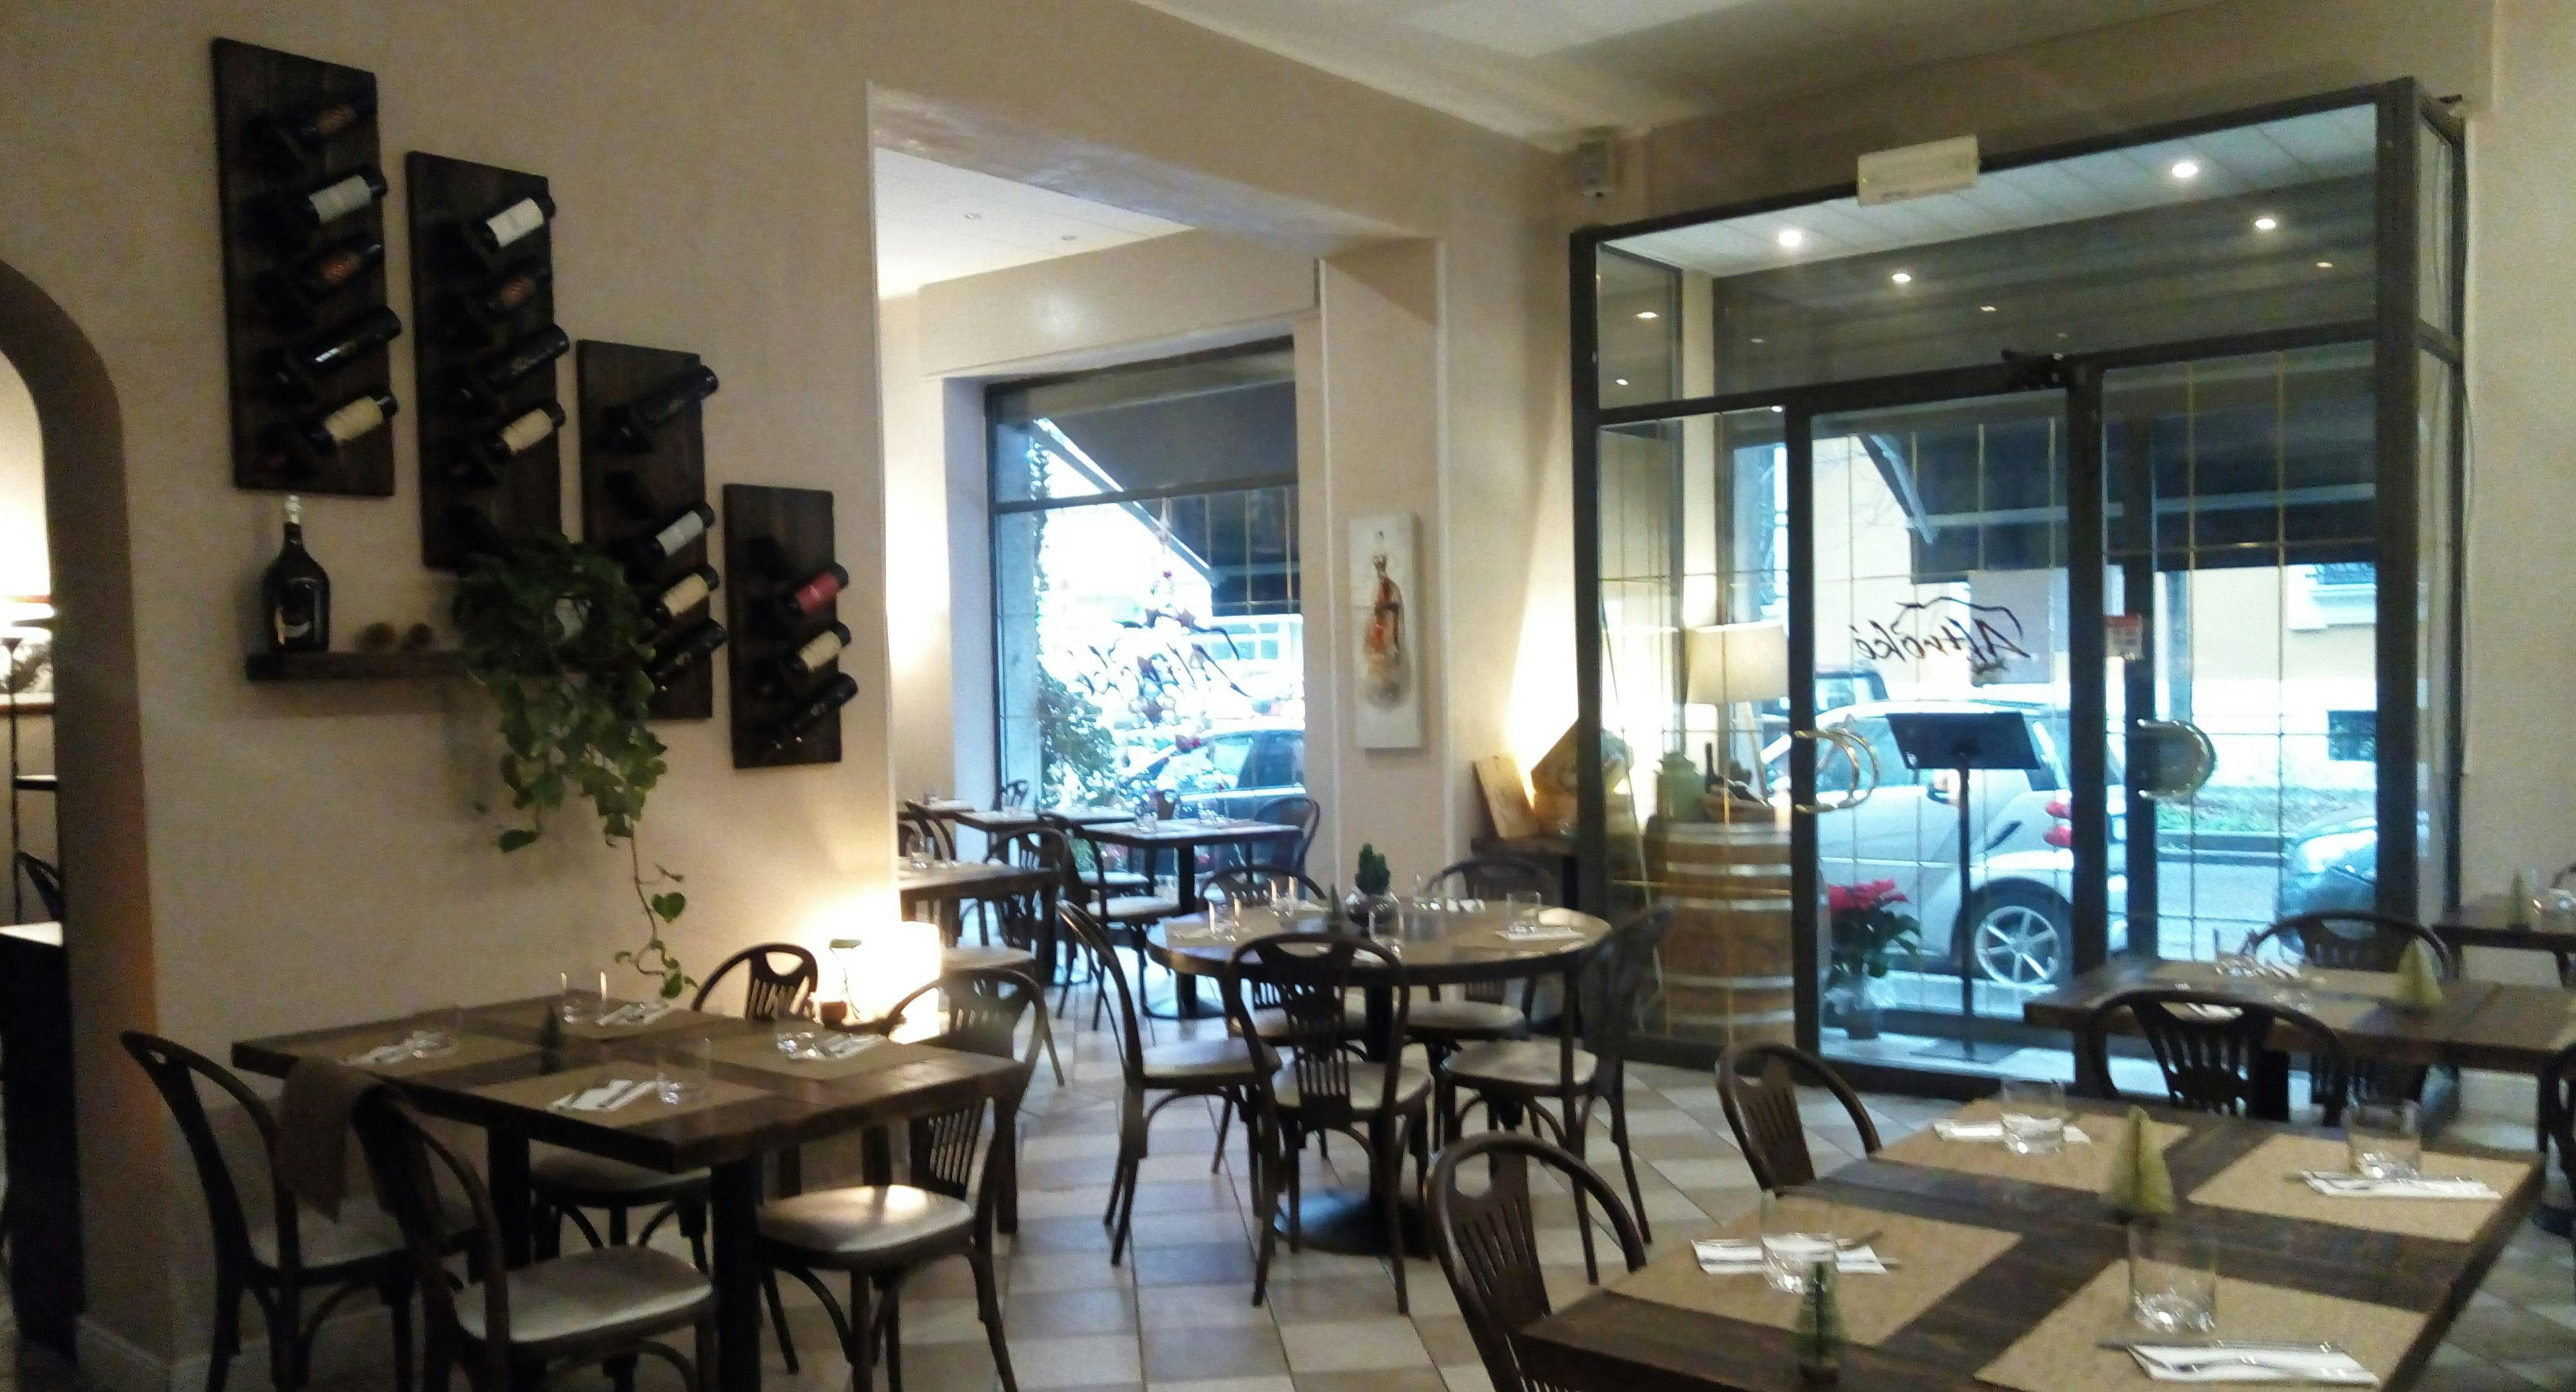 Photo of restaurant Altrokè in Porta Vittoria, Rome